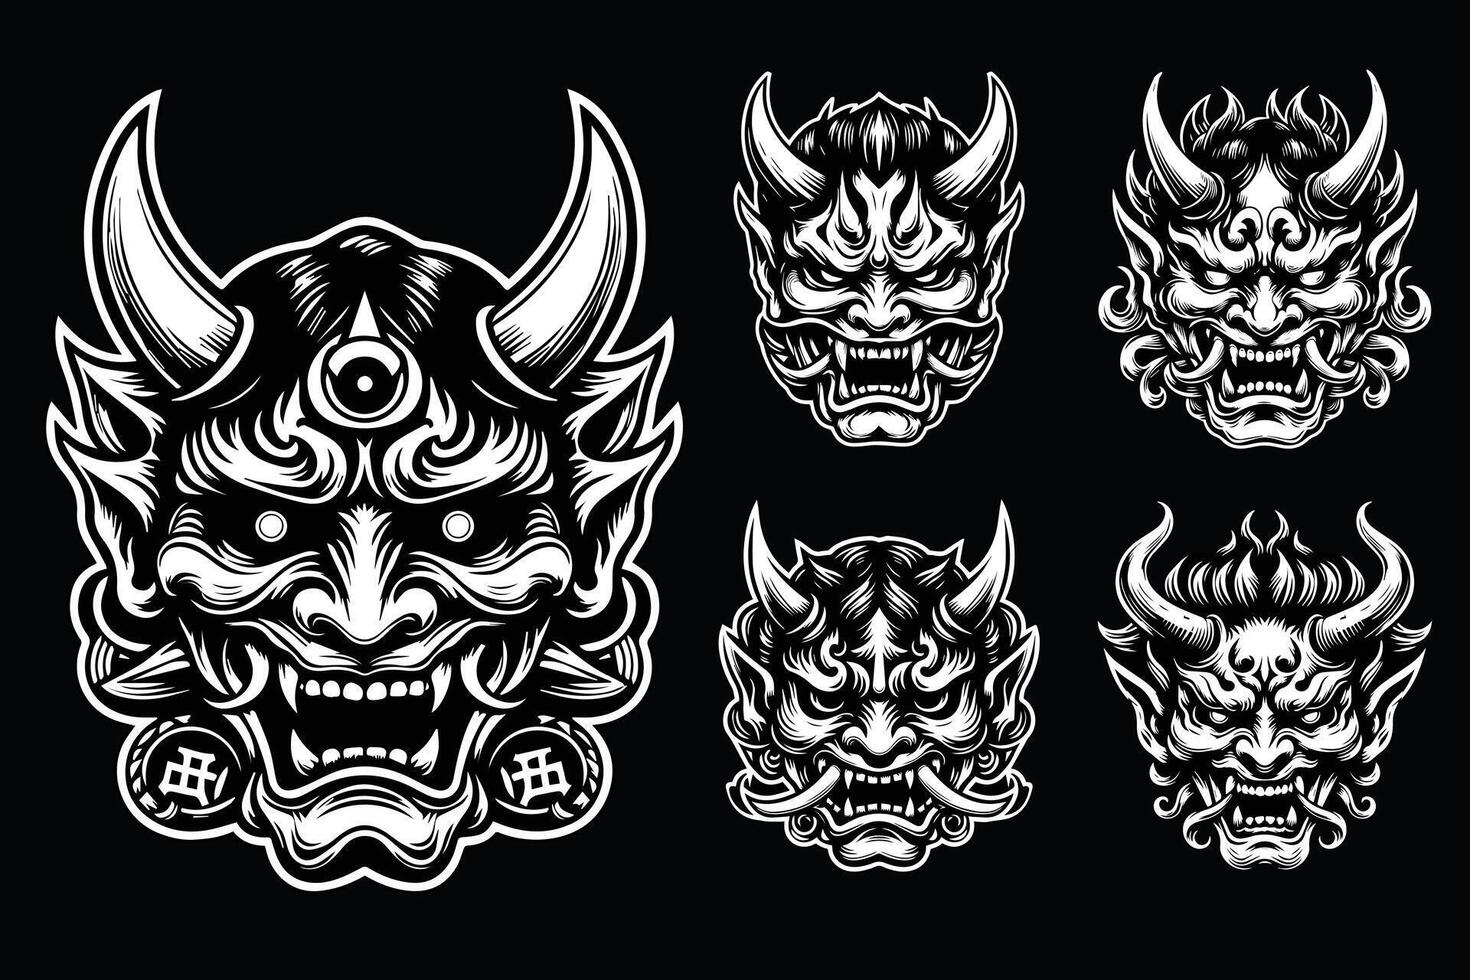 Dark Art Scary Japanese Hannya Mask Black and White Illustration vector